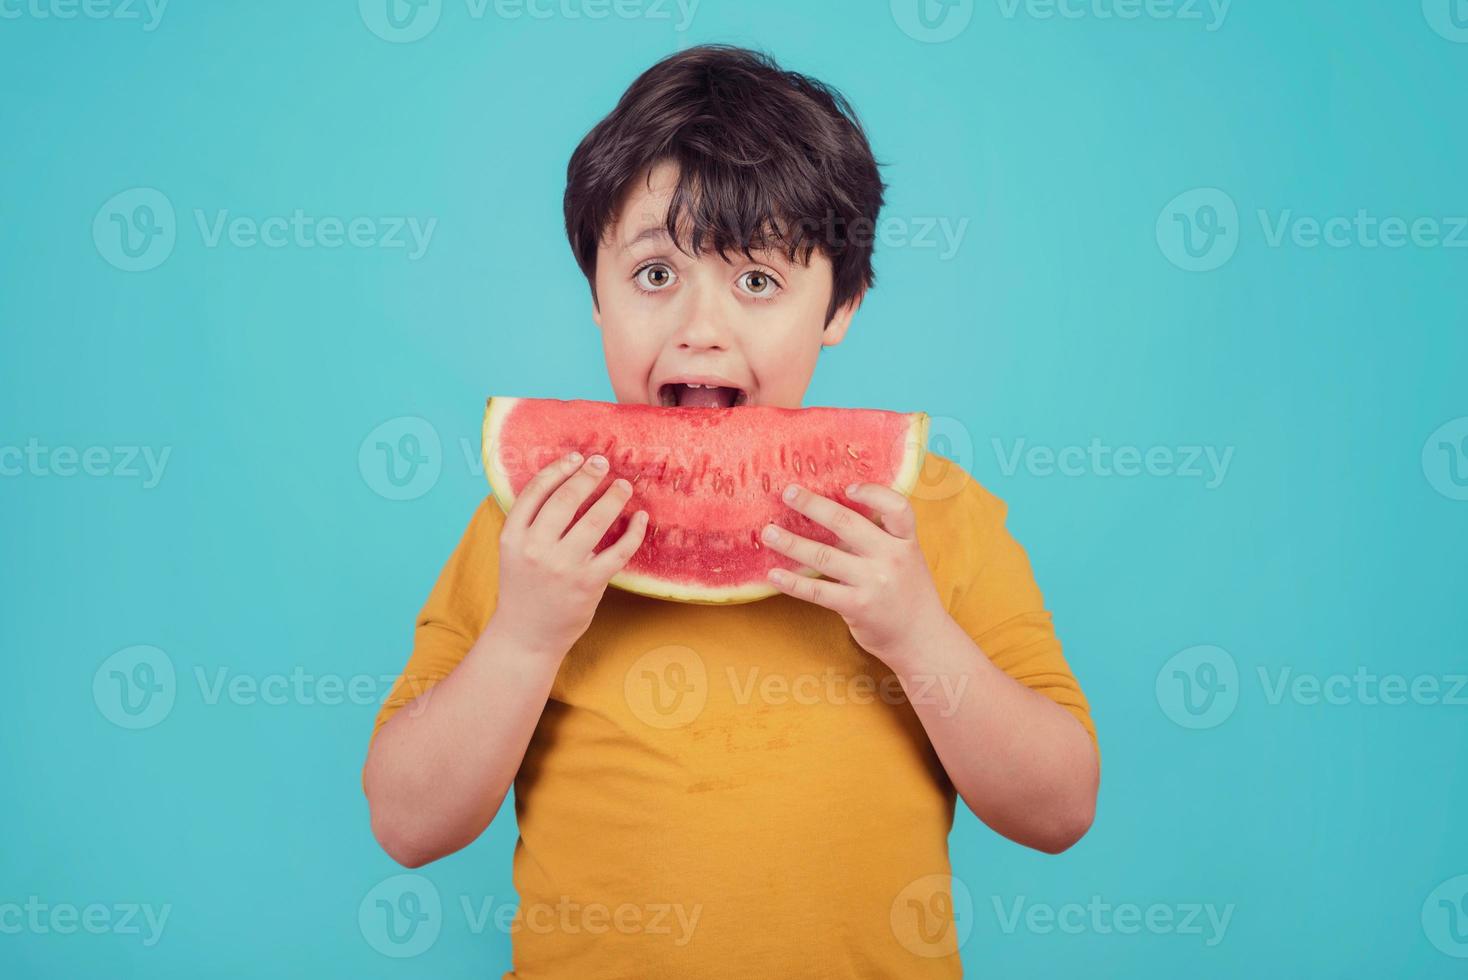 il bambino felice mangia l'anguria foto